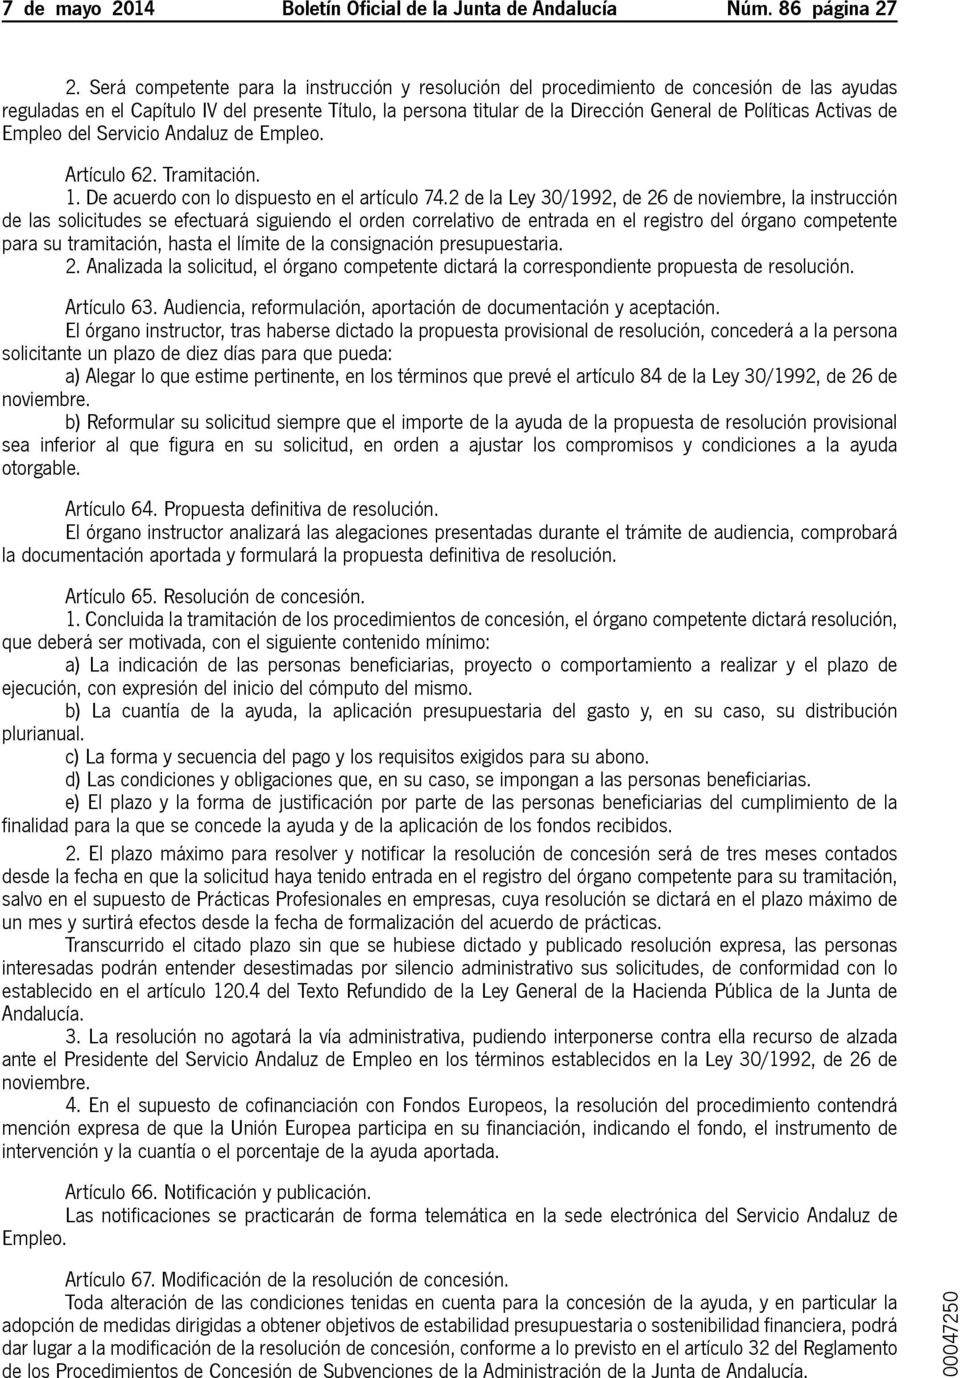 Activas de Empleo del Servicio Andaluz de Empleo. Artículo 62. Tramitación. 1. De acuerdo con lo dispuesto en el artículo 74.